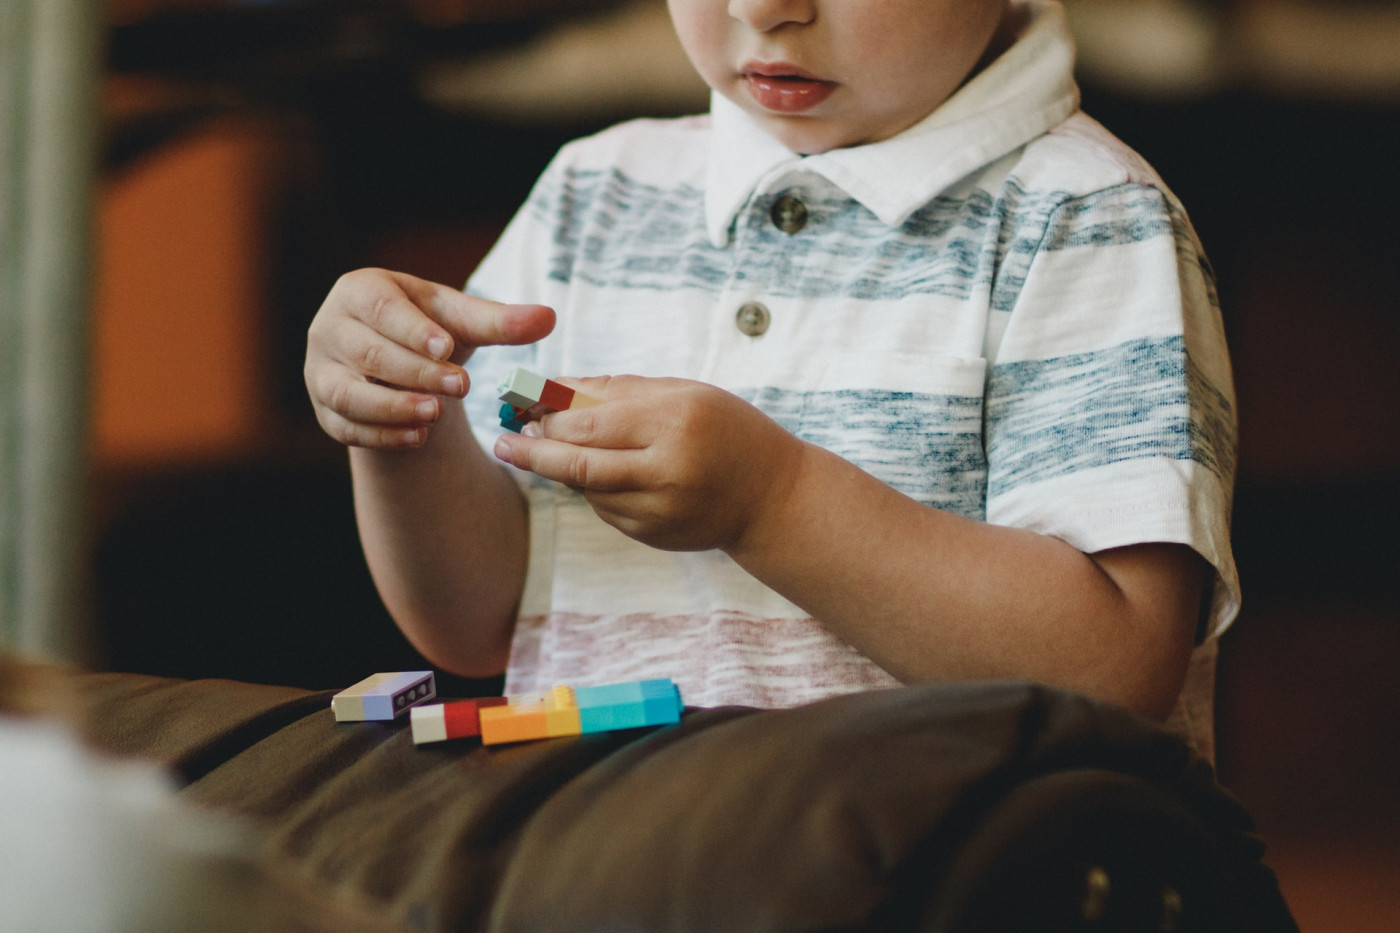 Criança brincando com blocos coloridos em cima de um sofá marrom. Só aparece metade do rosto e uma camiseta pólo branca com listras verdes e vermelhas